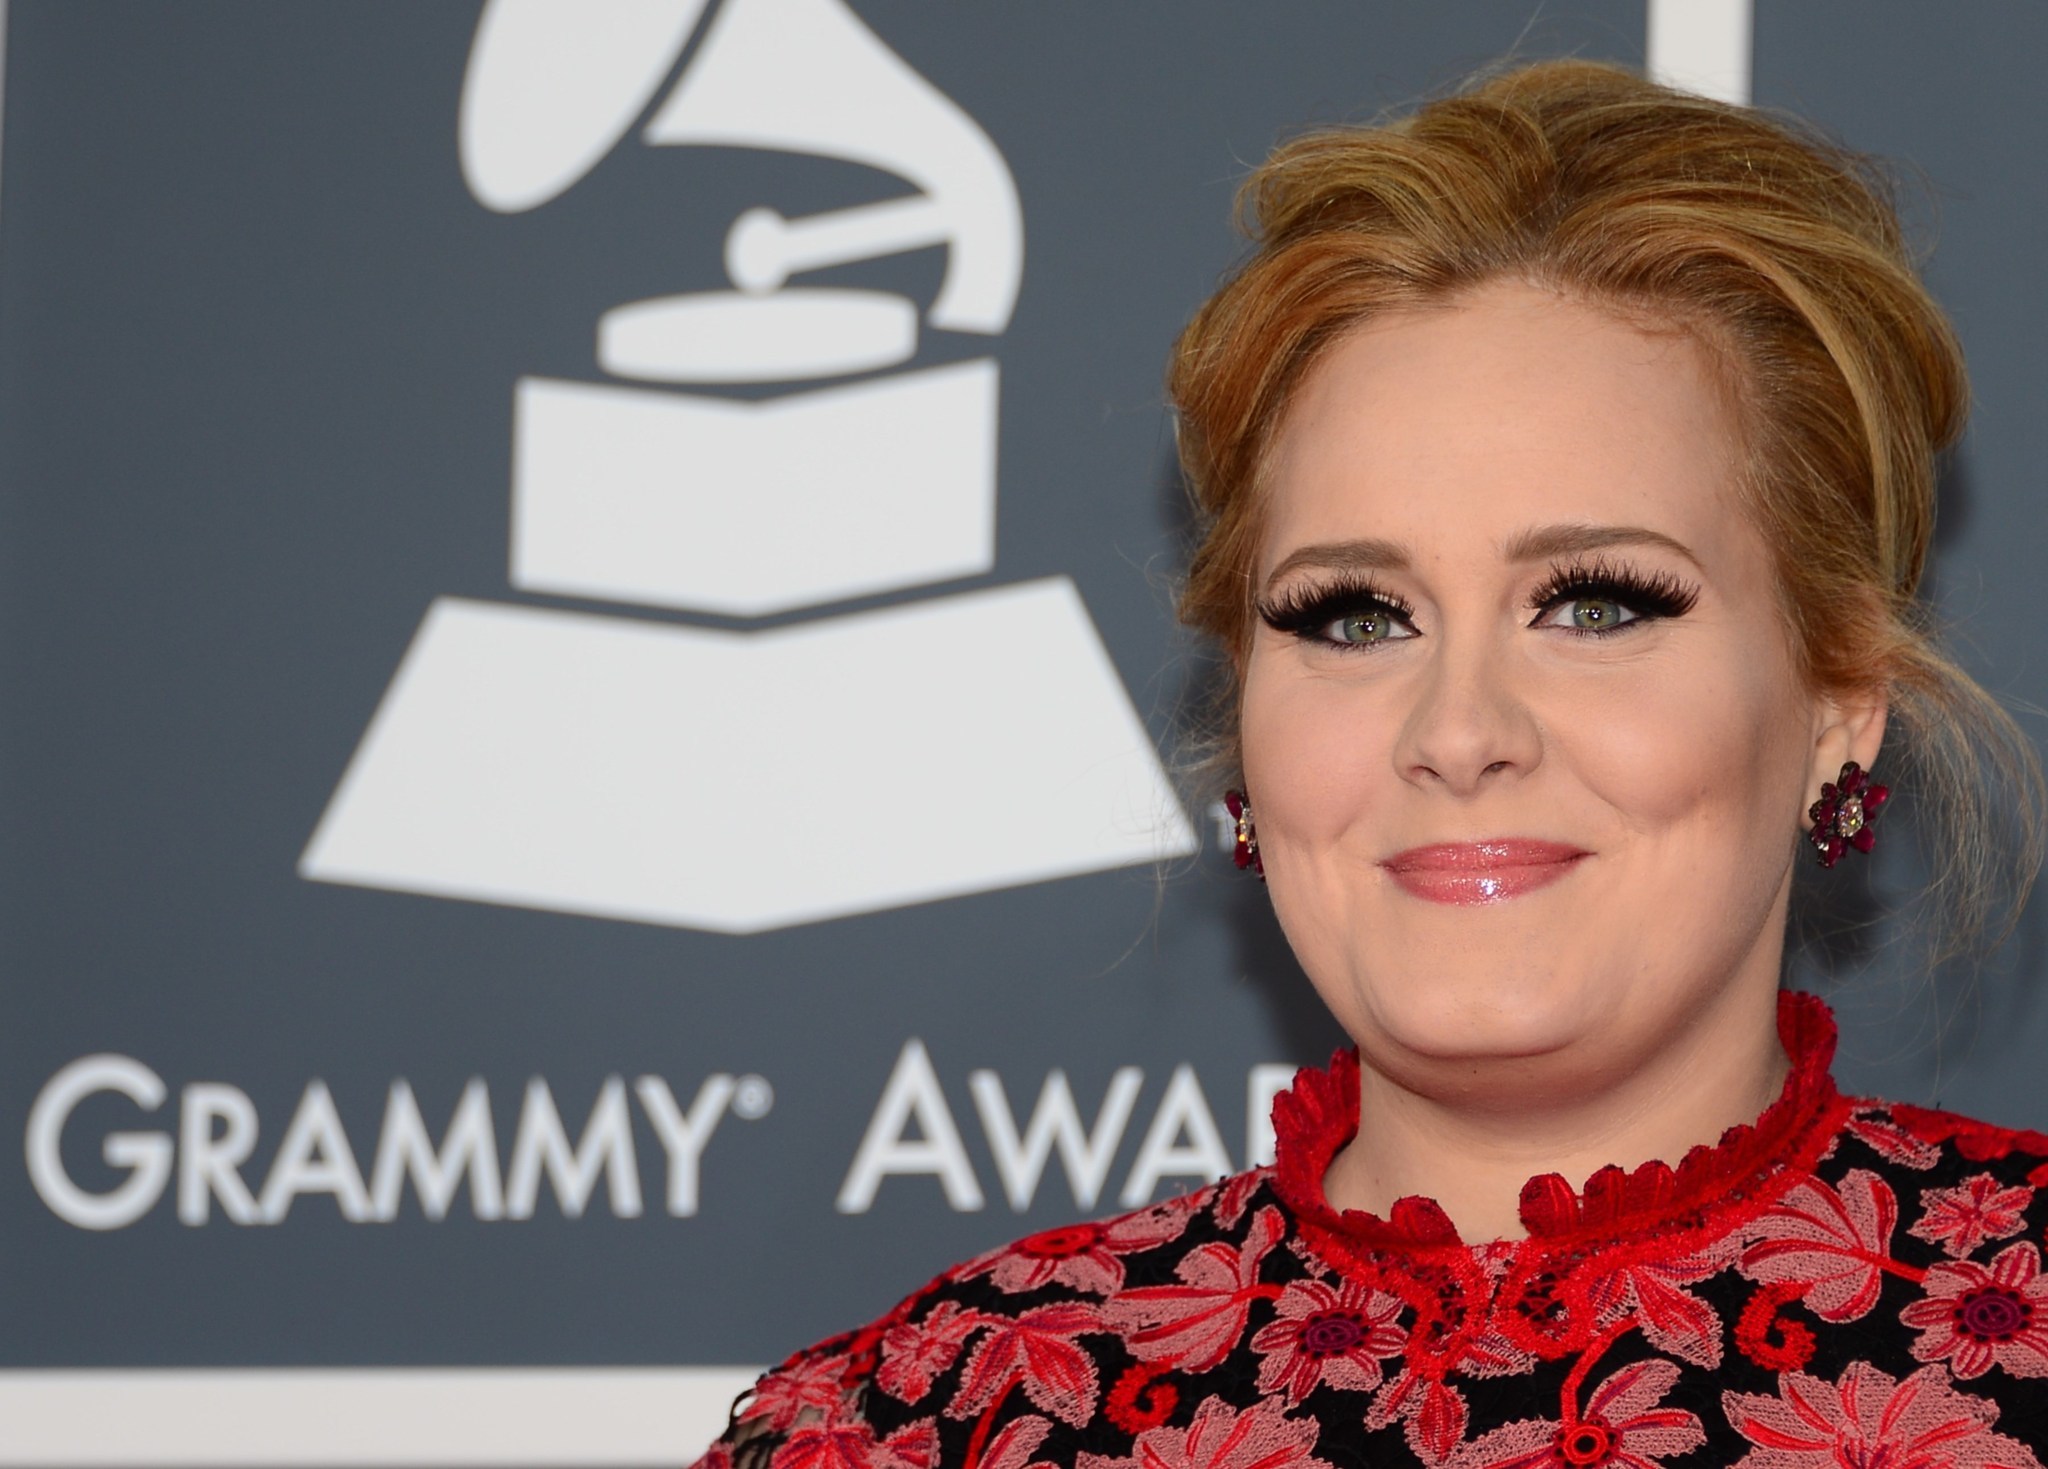 Adele to release new album called '25' on Nov. 20 - Chicago Tribune